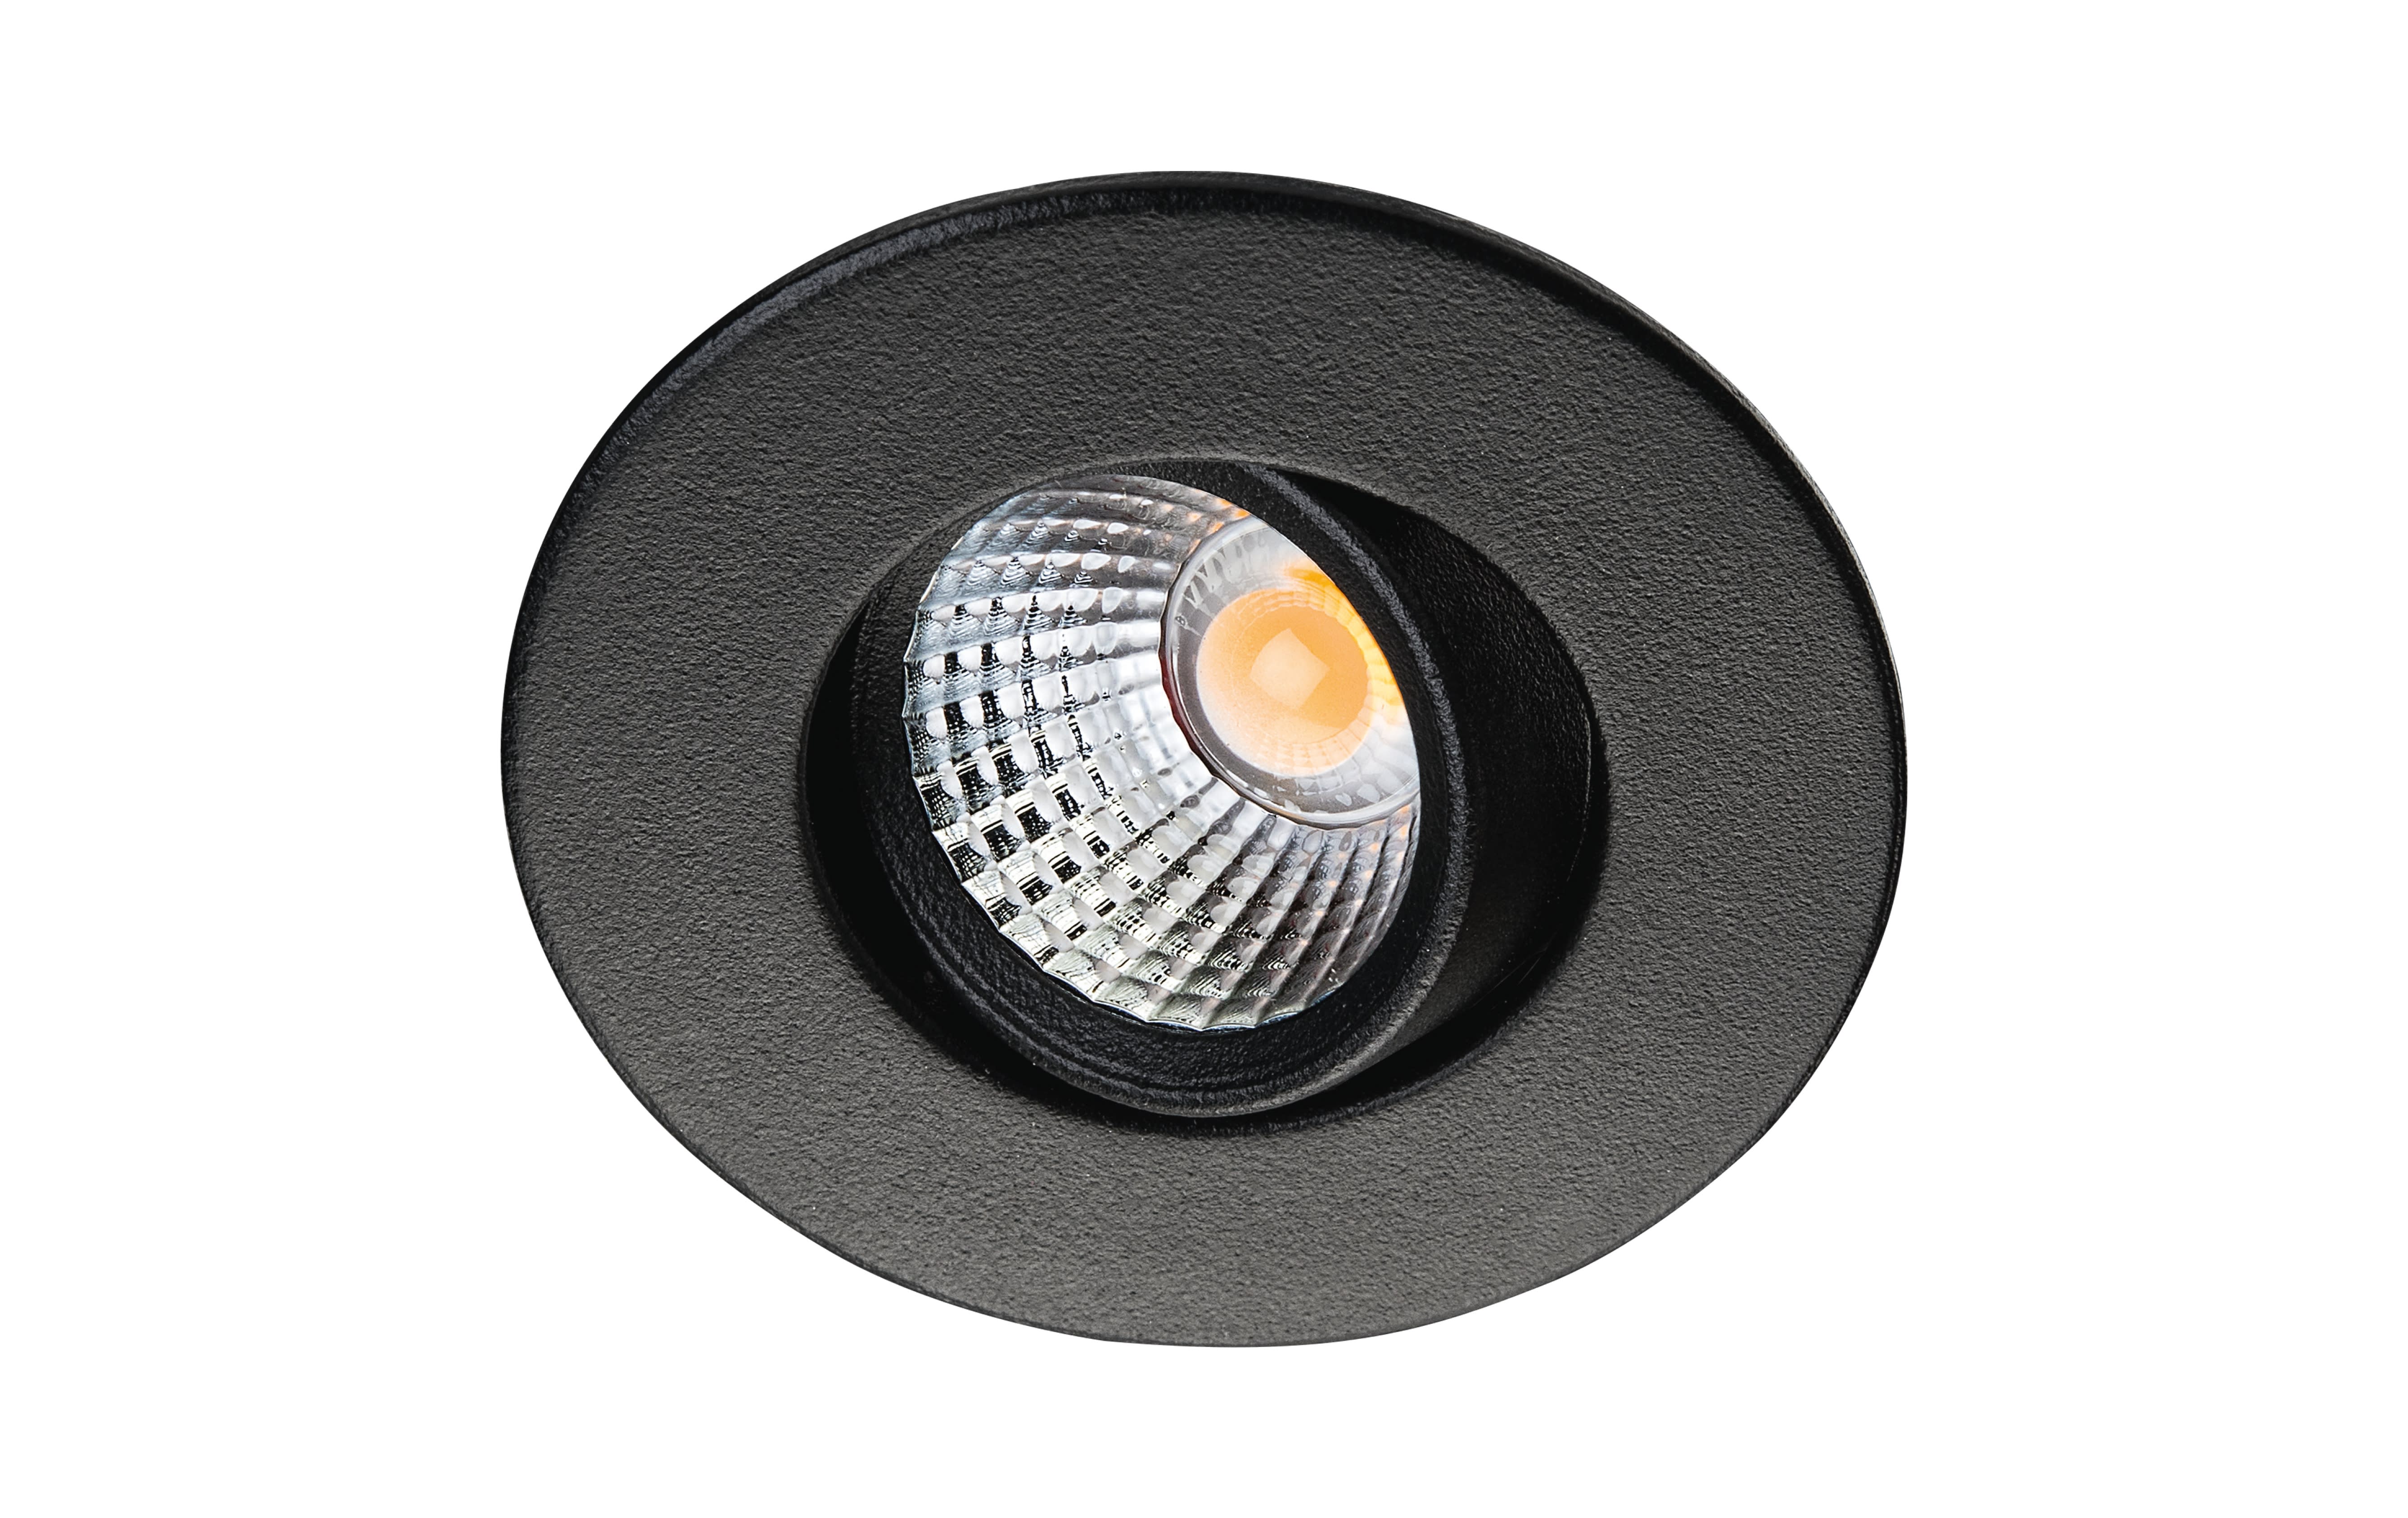 SG Lighting - Nano Tilt downlight noir 240lm 3000K Ra>90 alimentation non fournie